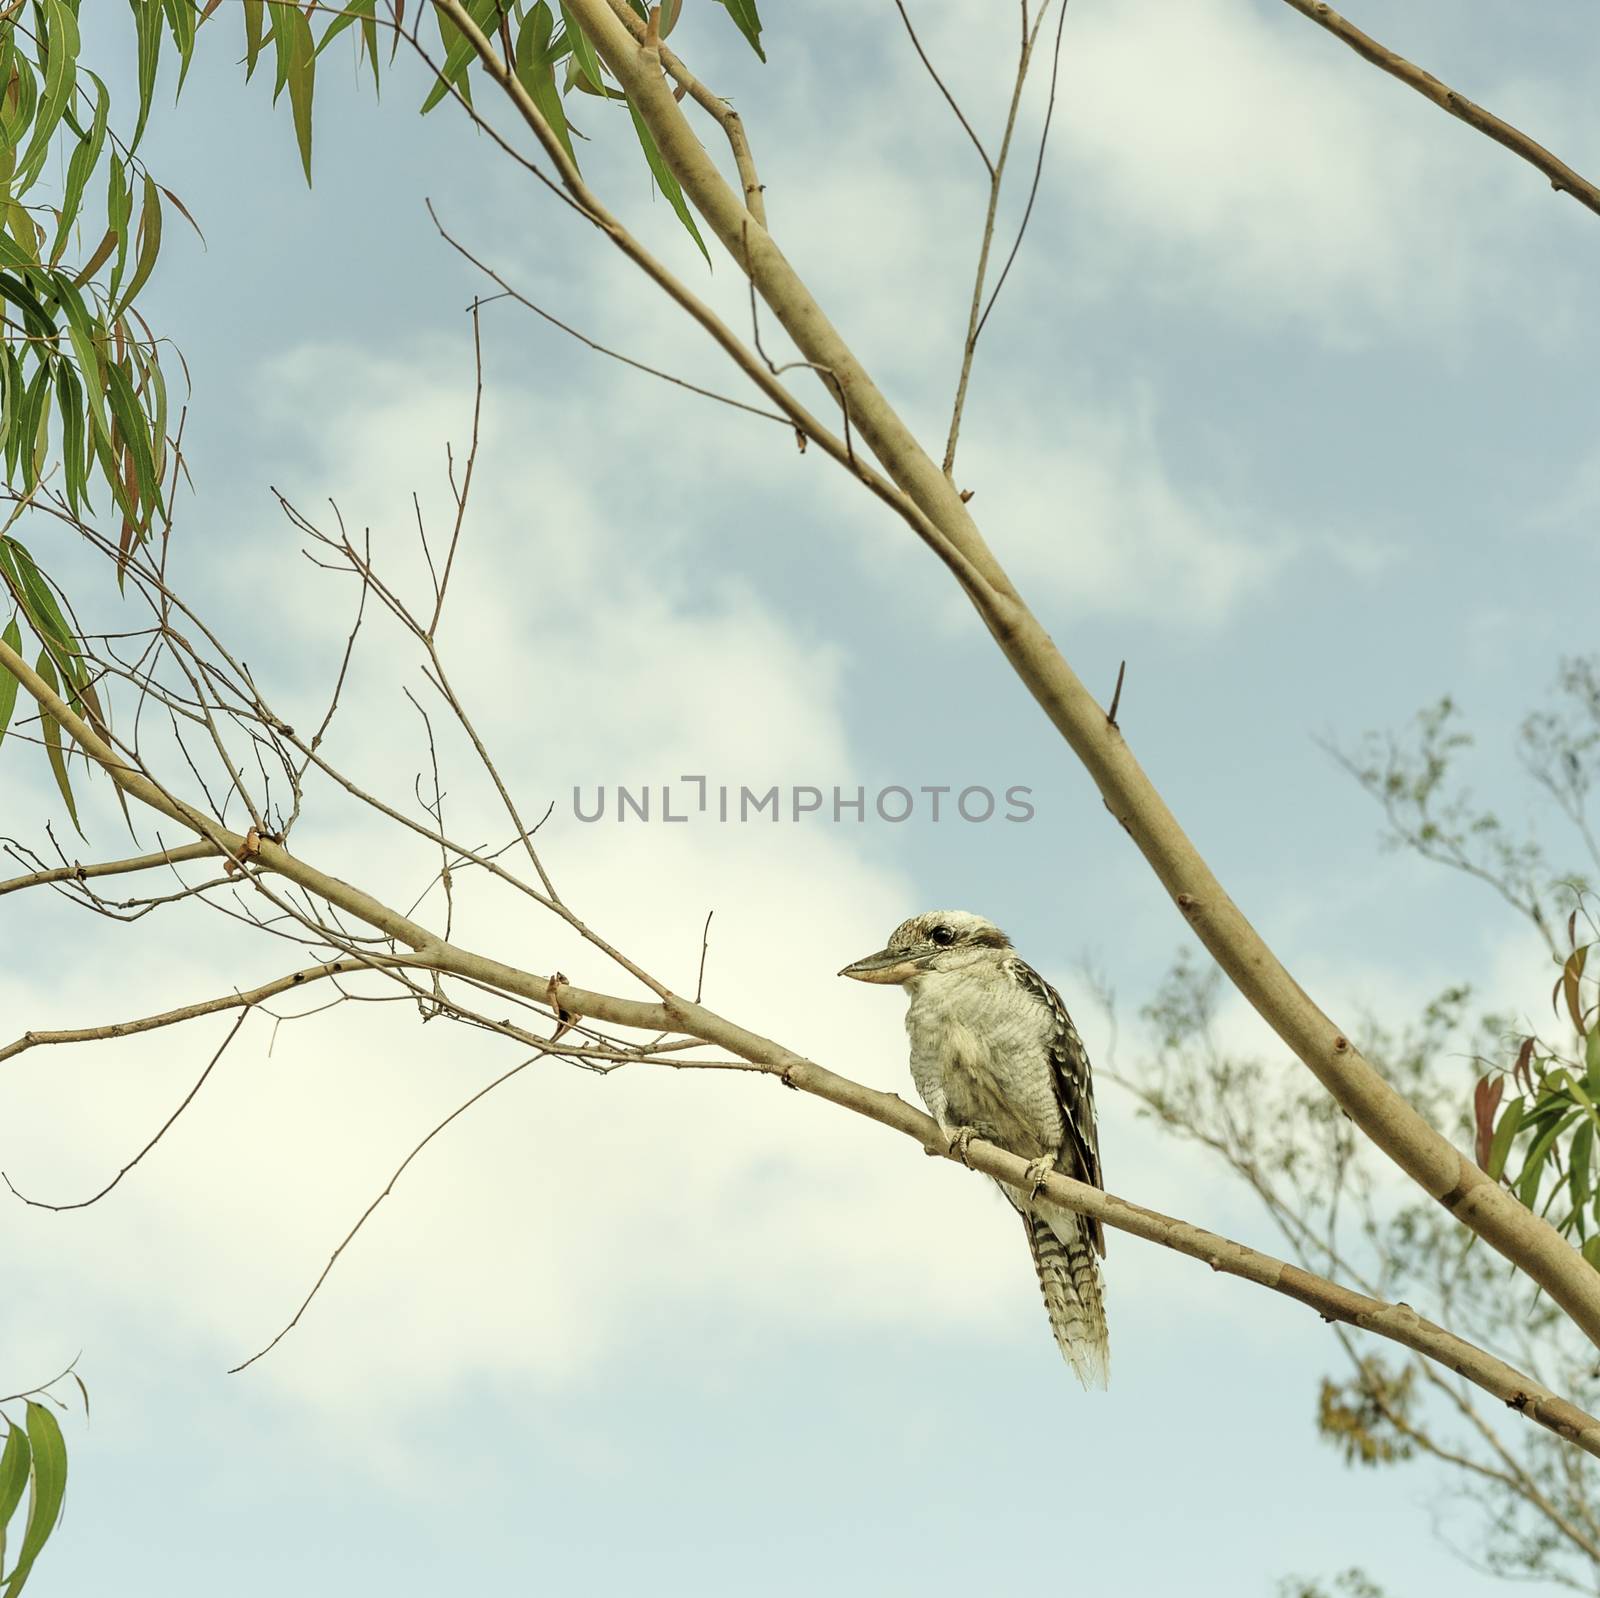 Iconic Australian Kookaburra in a Gumtree by sherj